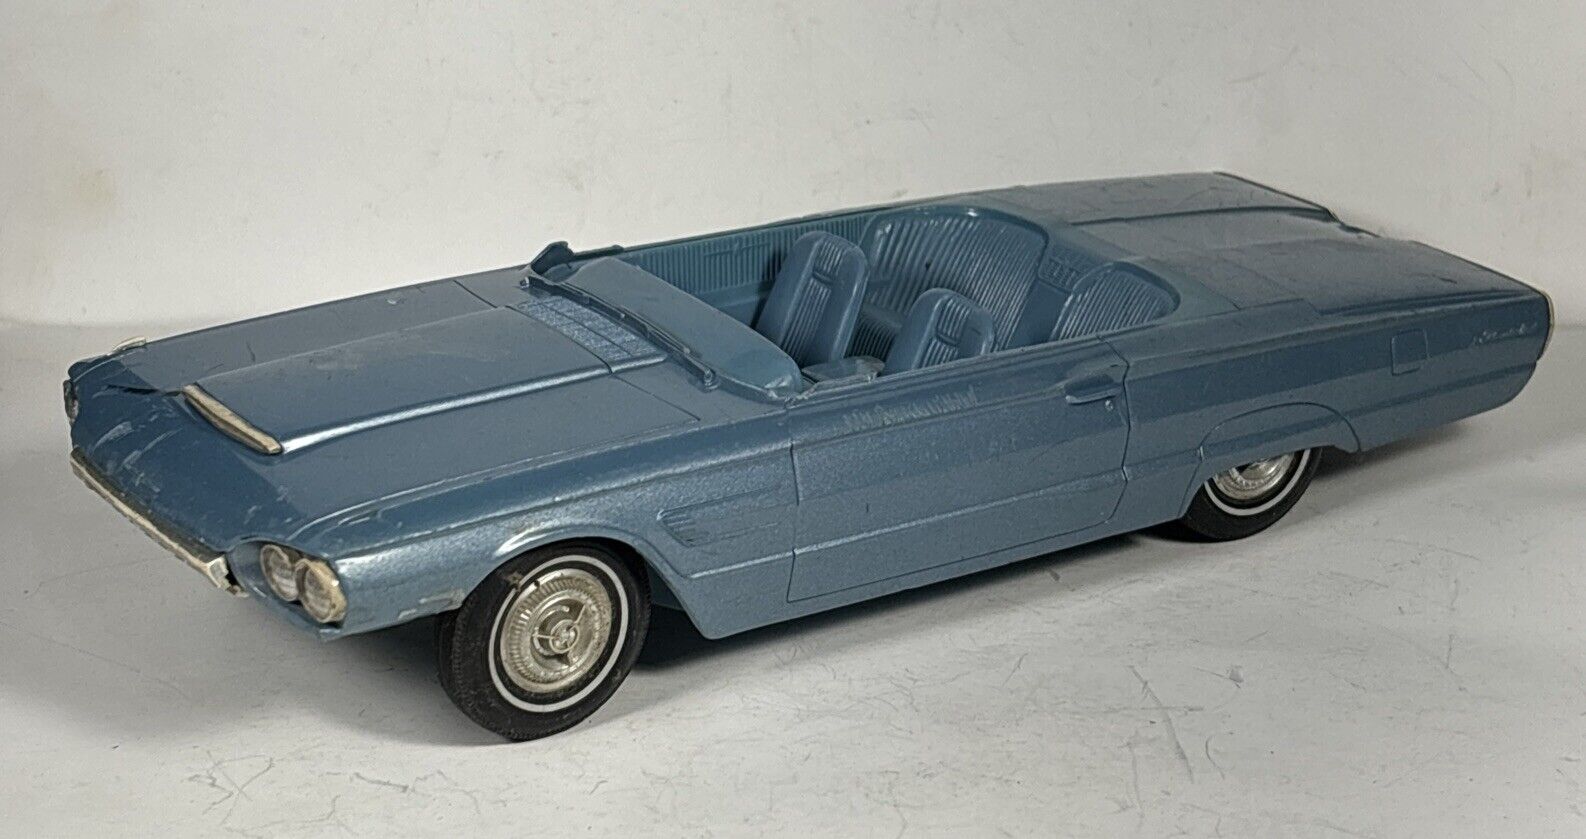 Vintage 1965 Ford Thunderbird Convertible Dealer Promo Rare Blue Model Car